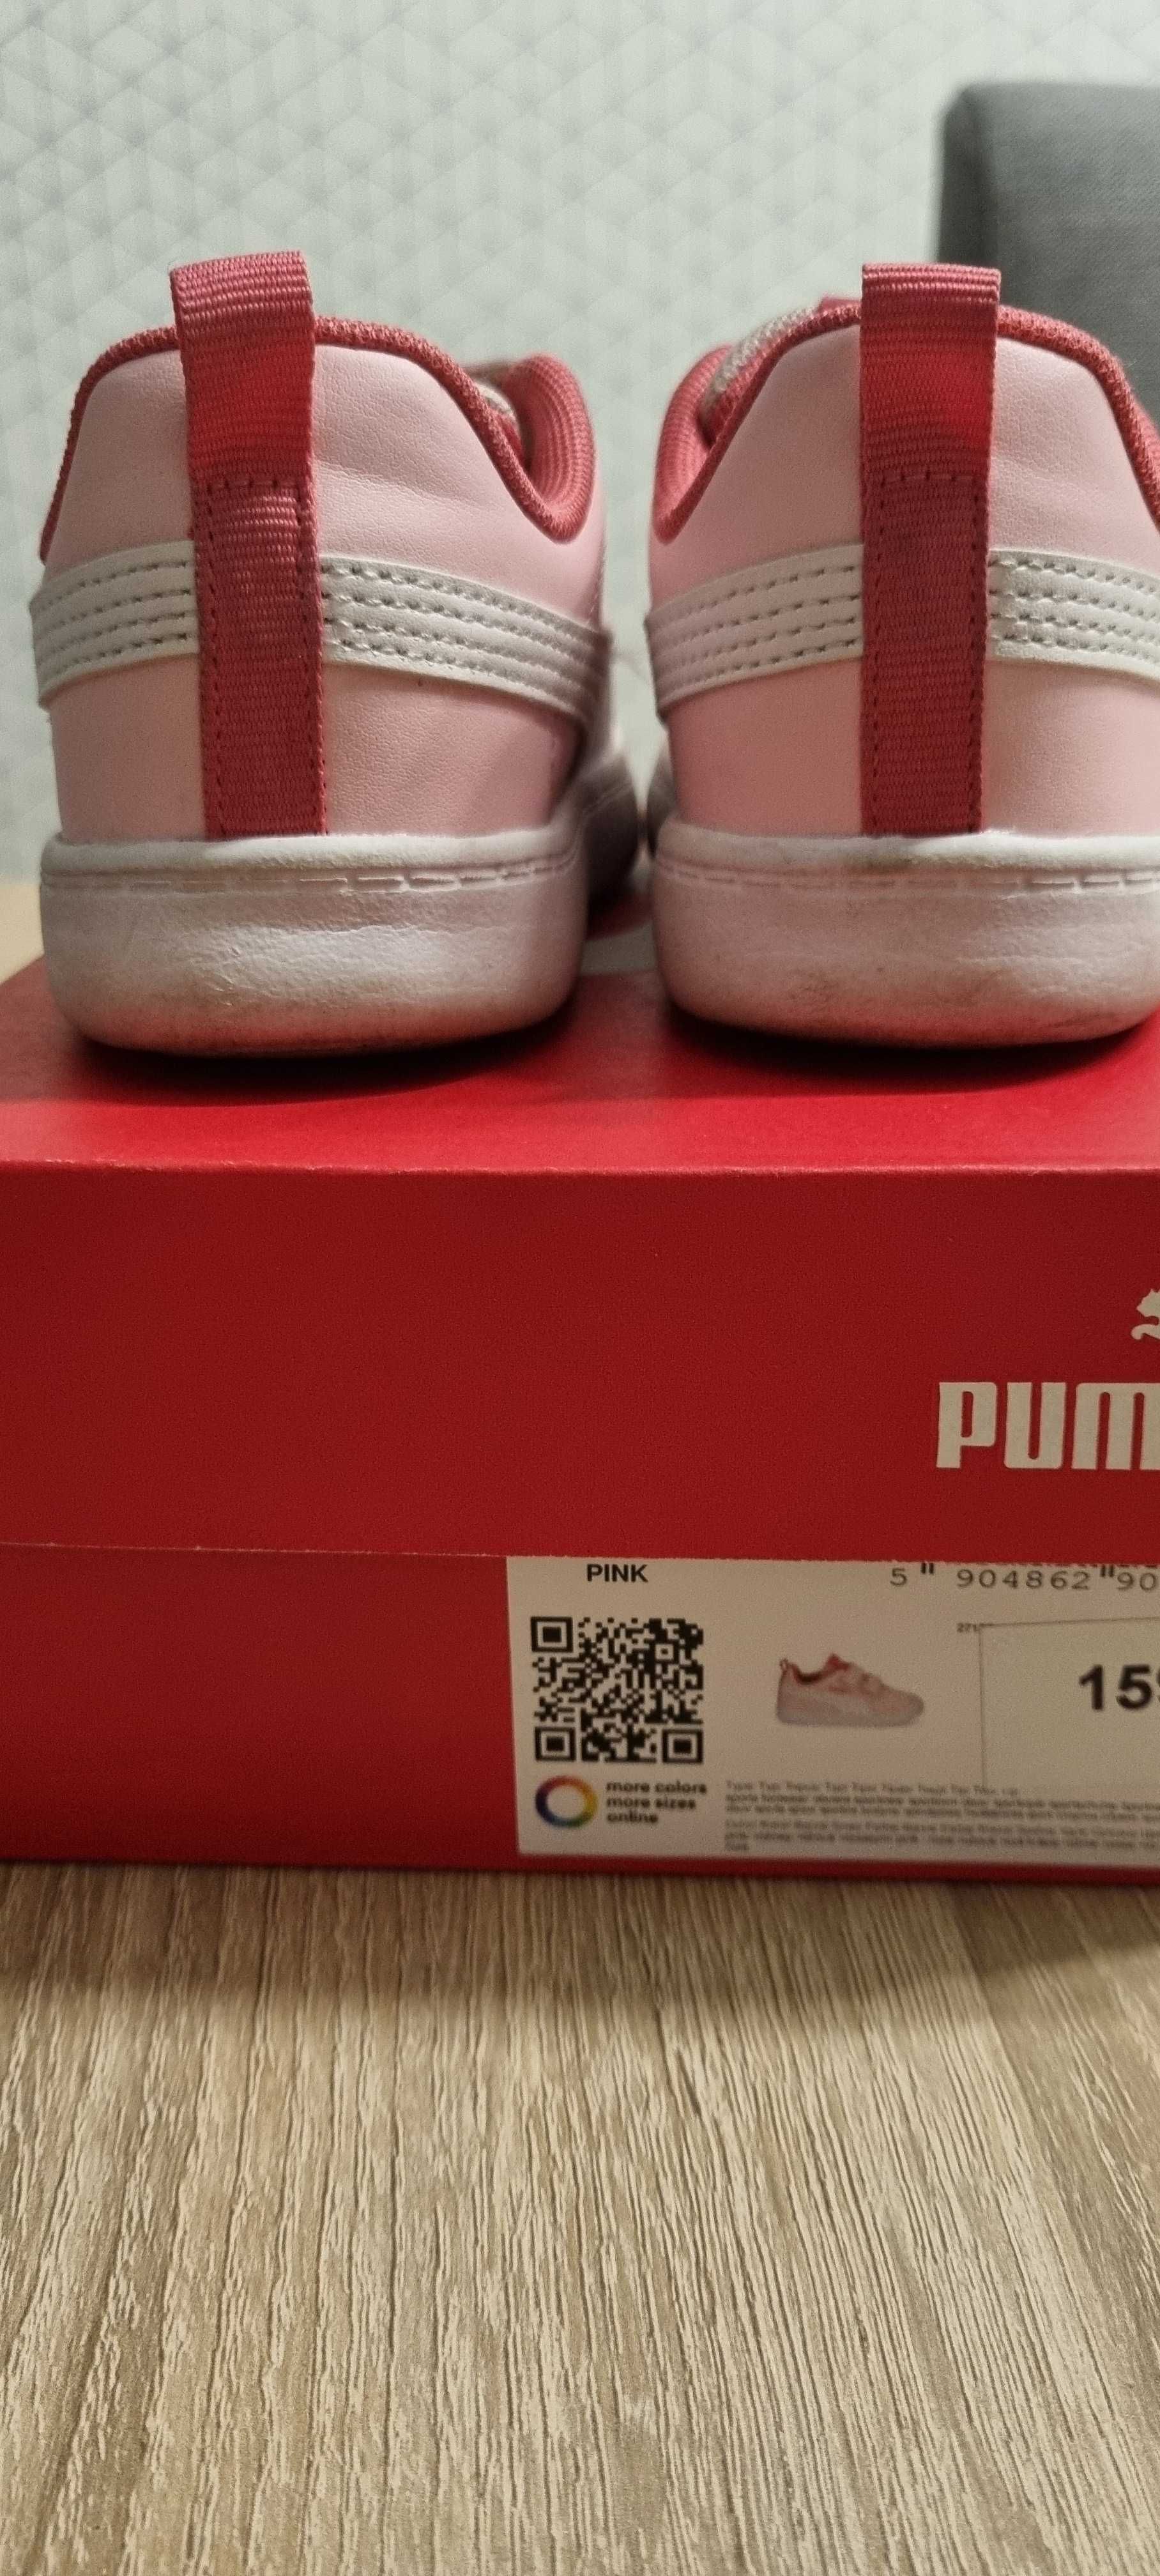 Adidasy Puma dla dziewczynki różowe rozm. 24